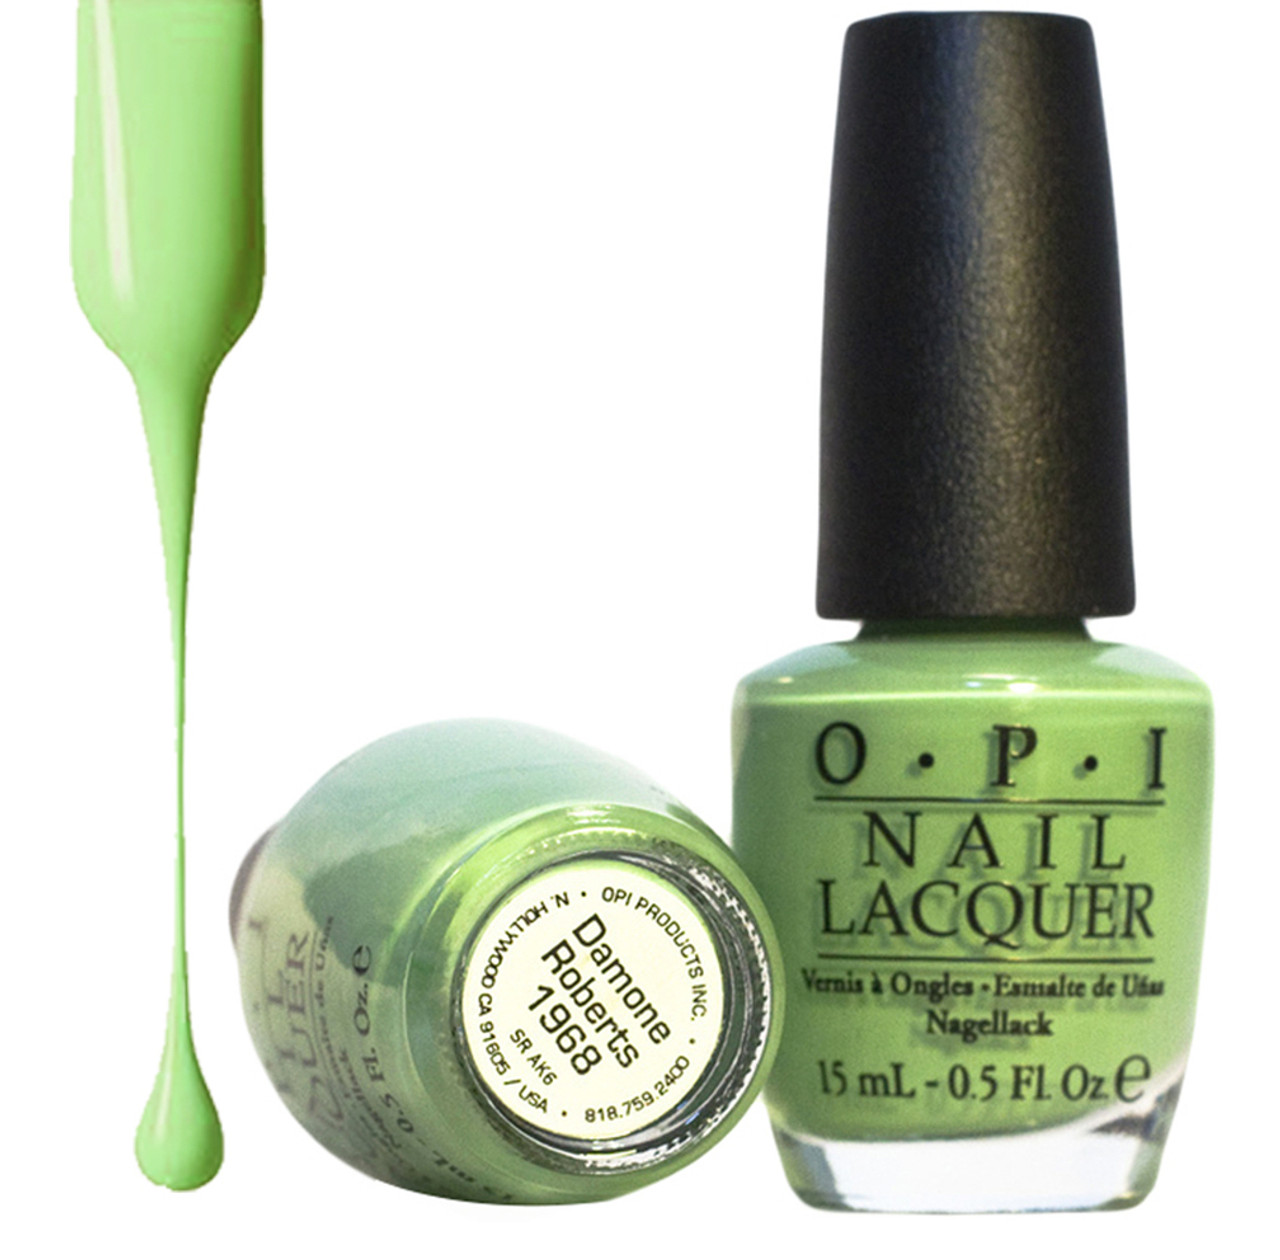 Fashion Polish | Dark green nails, Forest green nail polish, Green nails